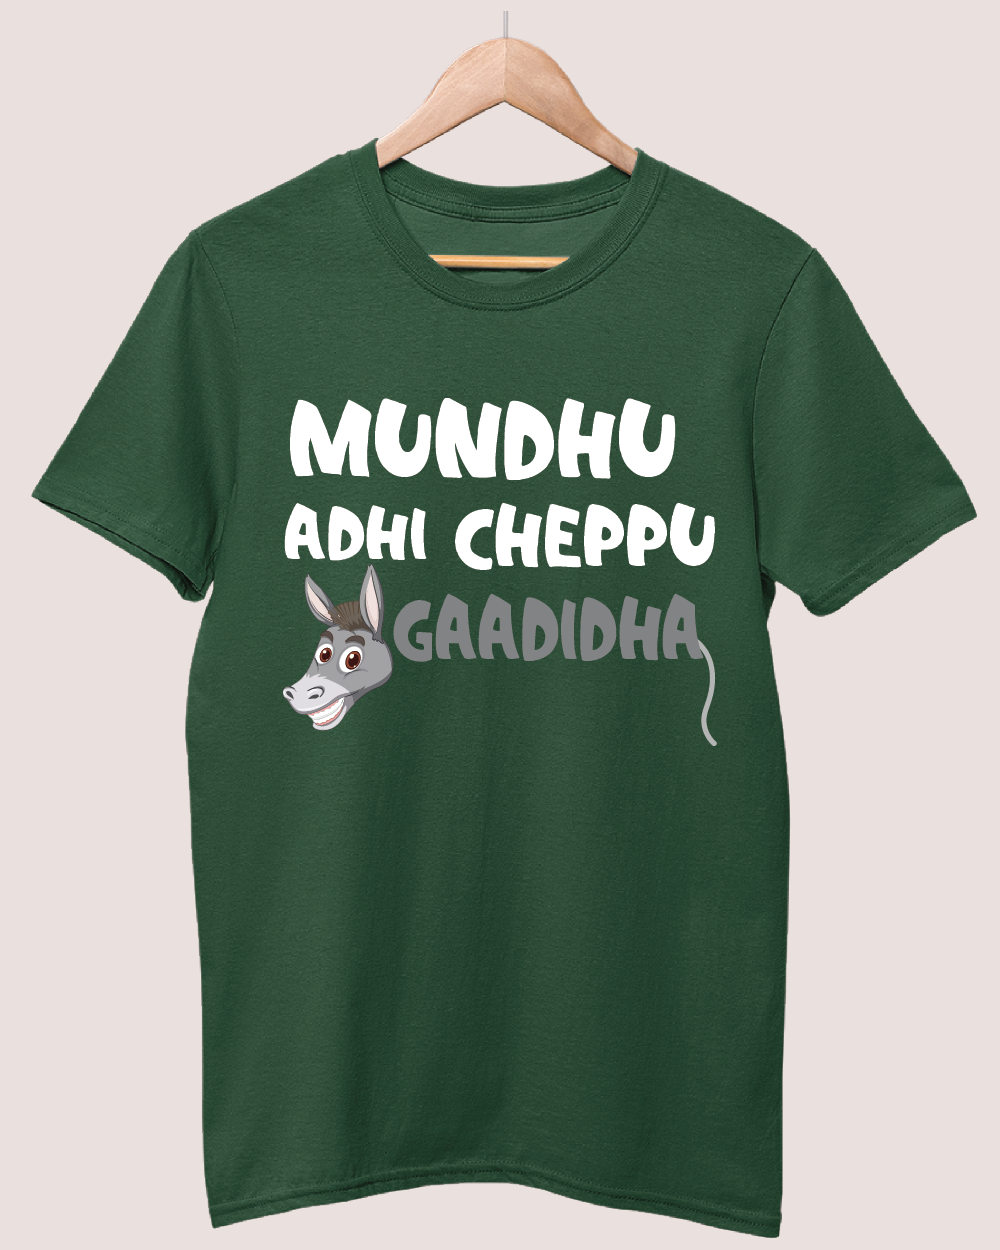 Mundhu Adhi Cheppu Gaadidha T-shirt